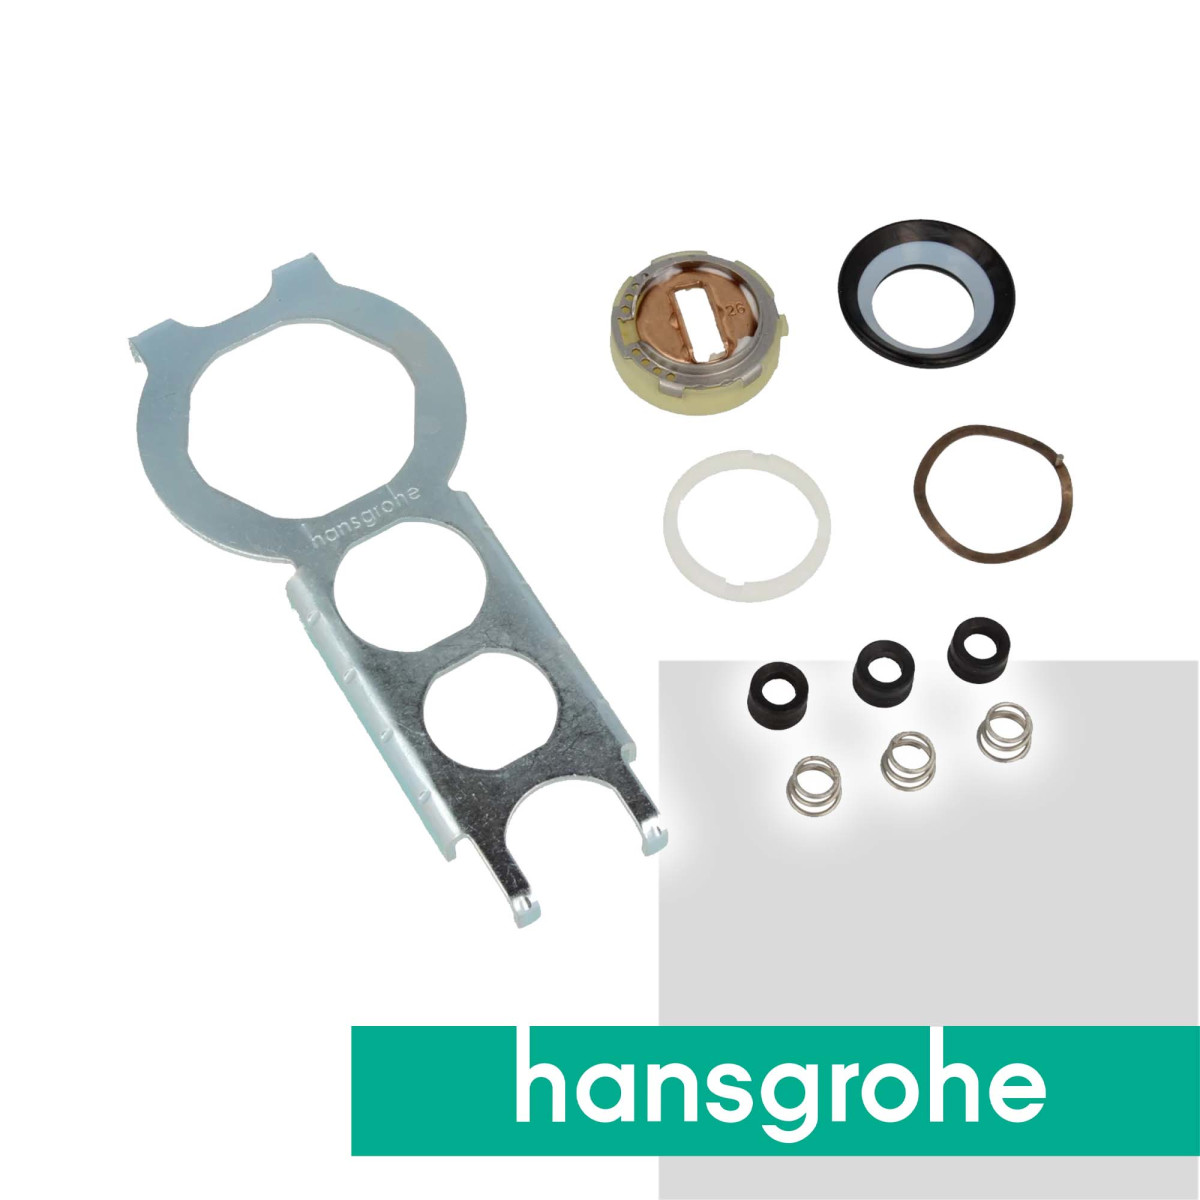 hansgrohe Dichtung-Set Service-Set für ND-Einhebel-Armaturen 13953000,  27,95 €